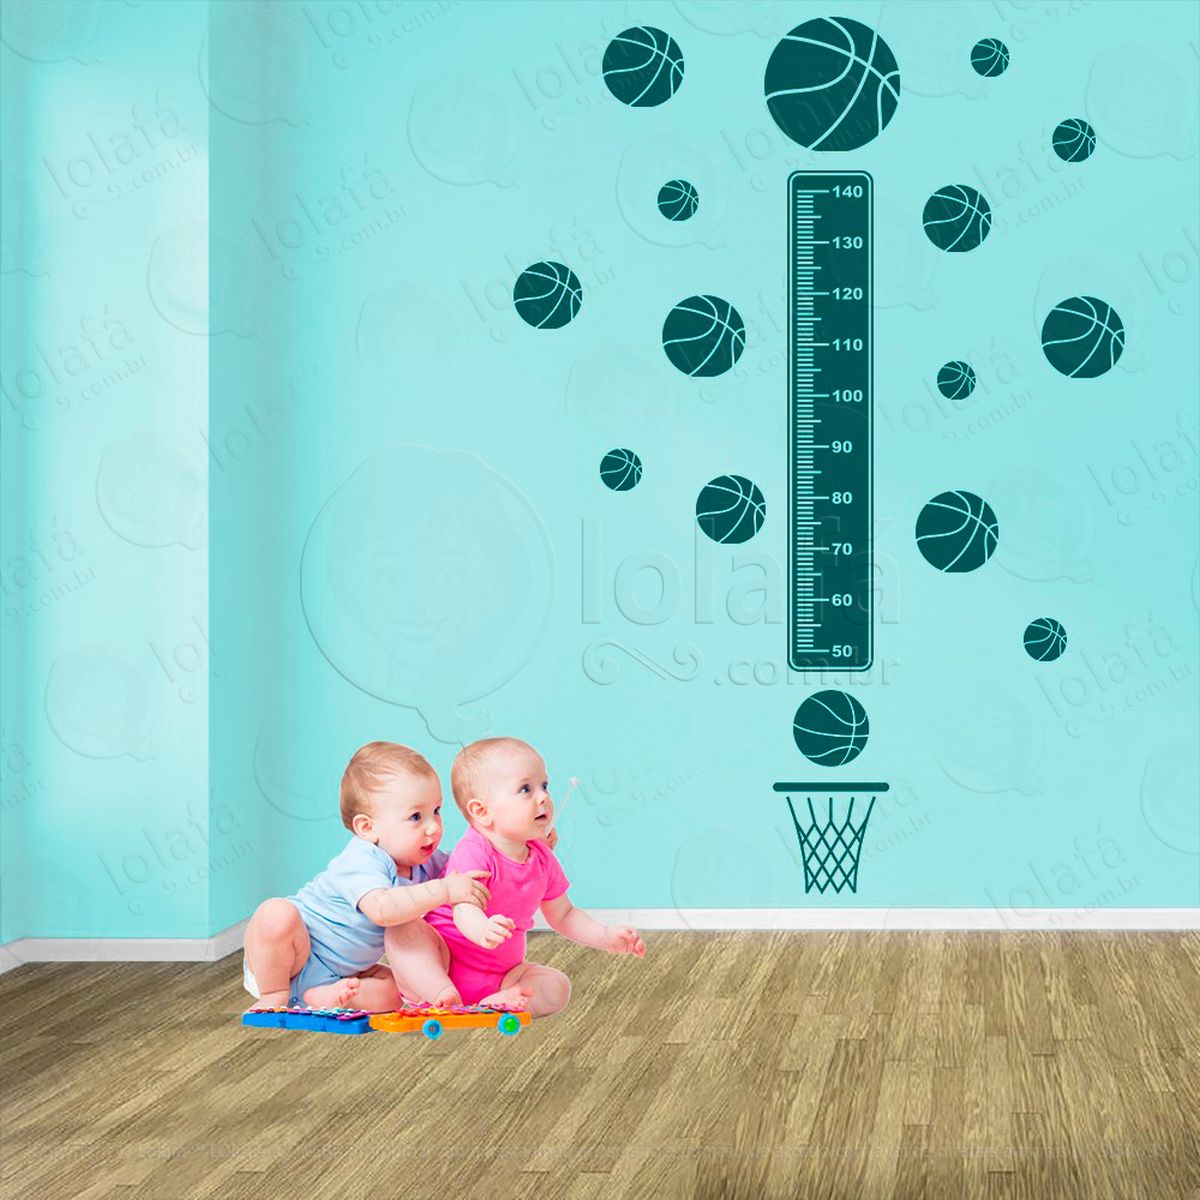 basquetebol e bolas de basquete adesivo régua de crescimento infantil, medidor de altura para quarto, porta e parede - mod:275